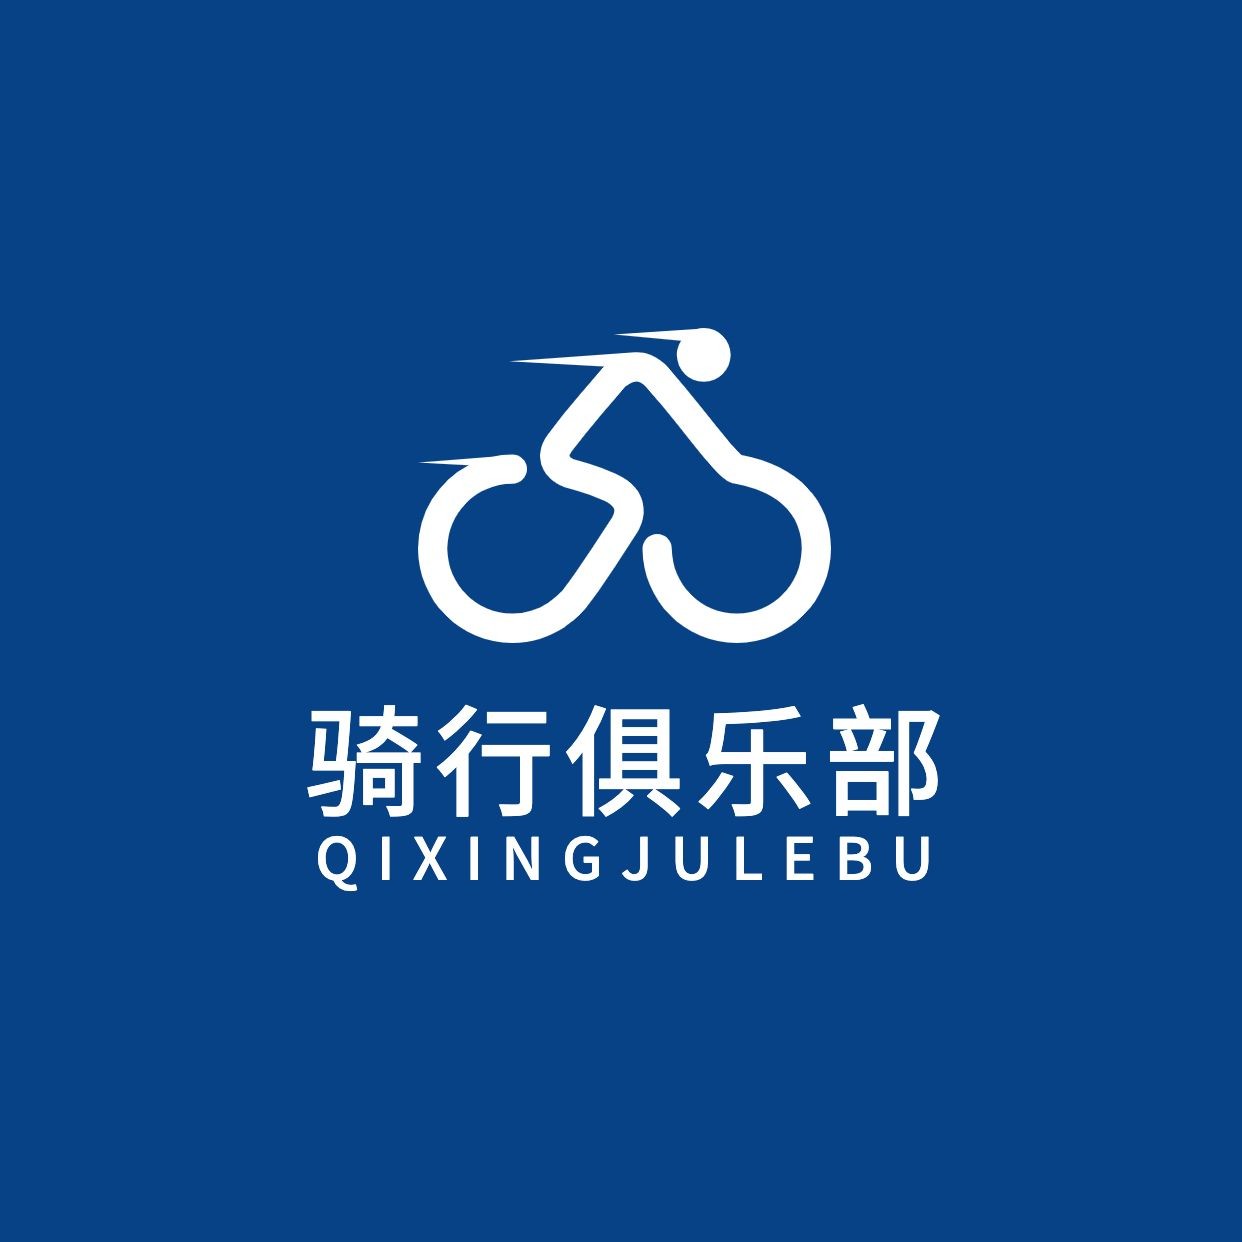 旅游公益自行车俱乐部logo设计